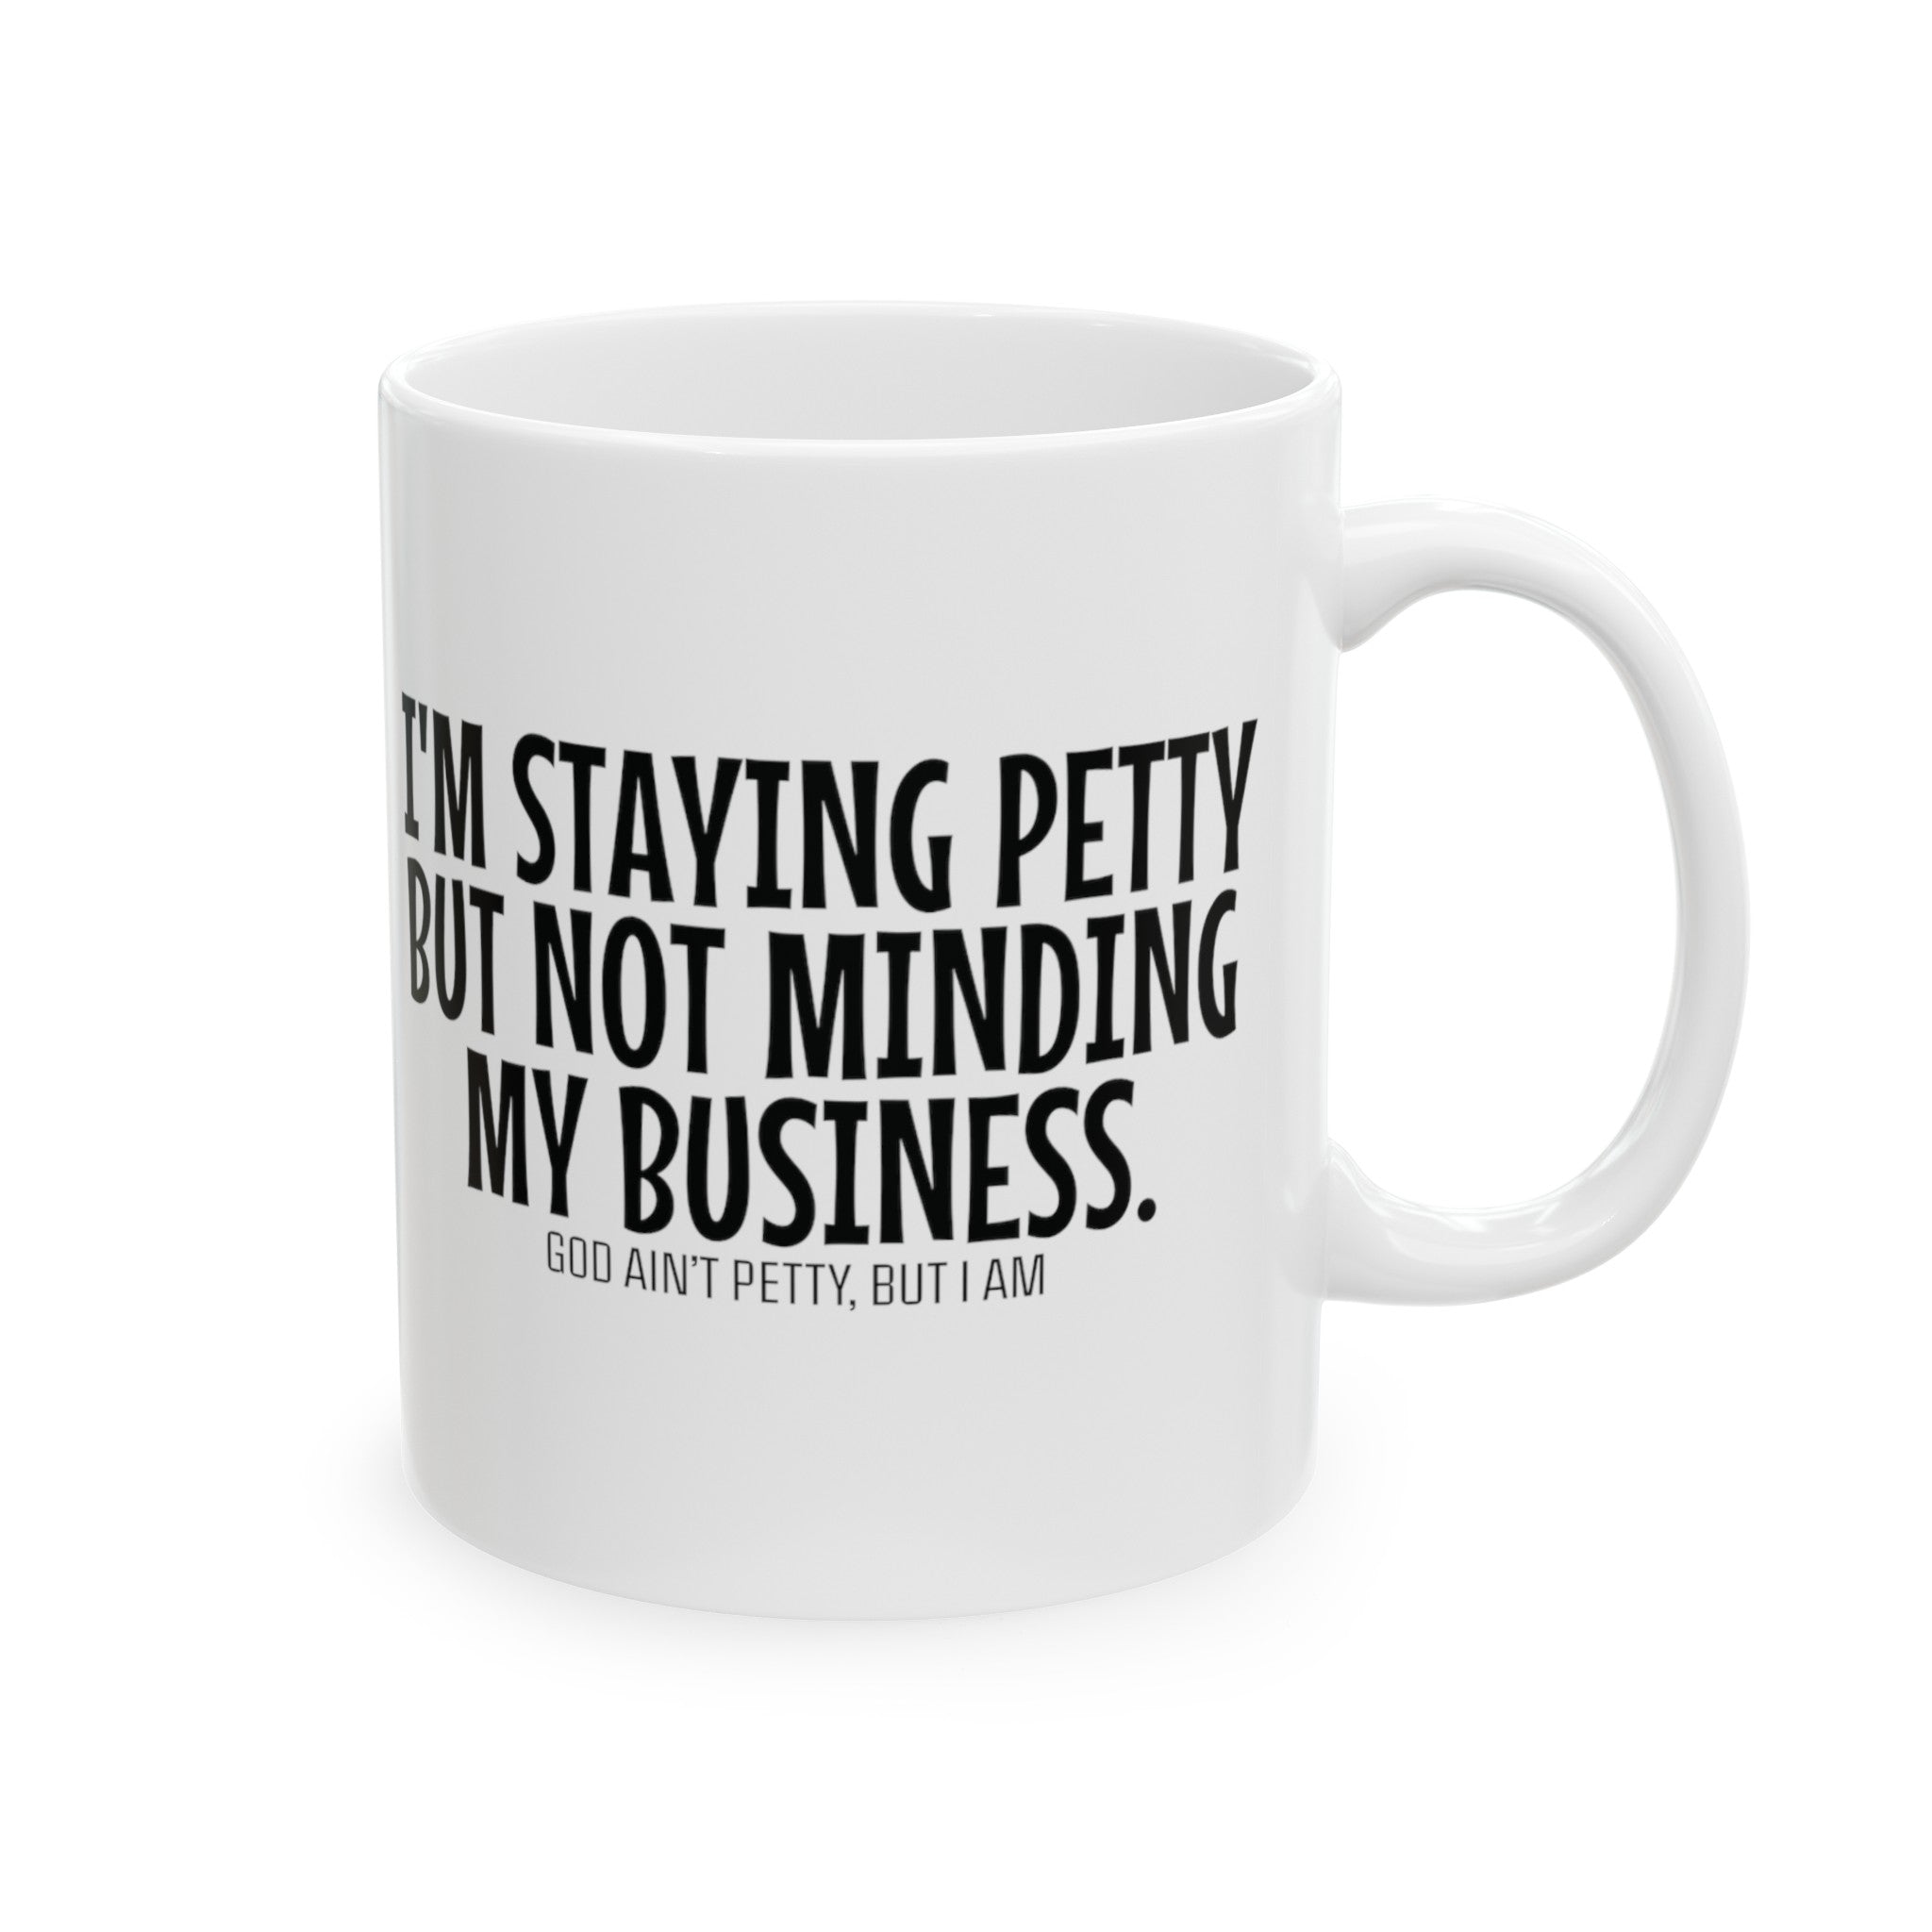 I'm staying Petty but not Minding My Business Mug 11oz ( White & Black)-Mug-The Original God Ain't Petty But I Am